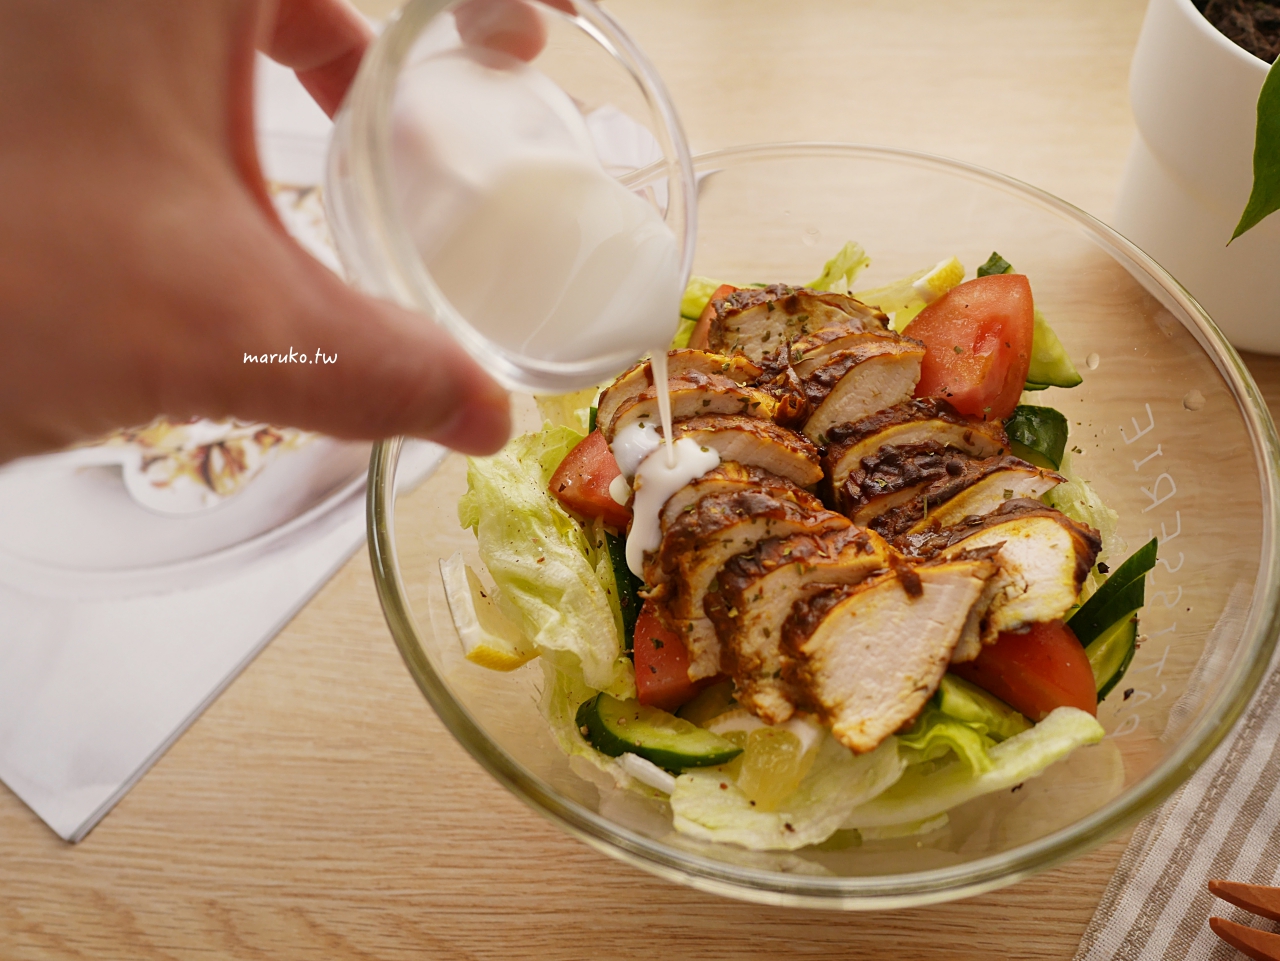 【食譜】咖哩優格雞胸肉沙拉 10分鐘簡單雞胸肉料理 氣炸鍋食譜